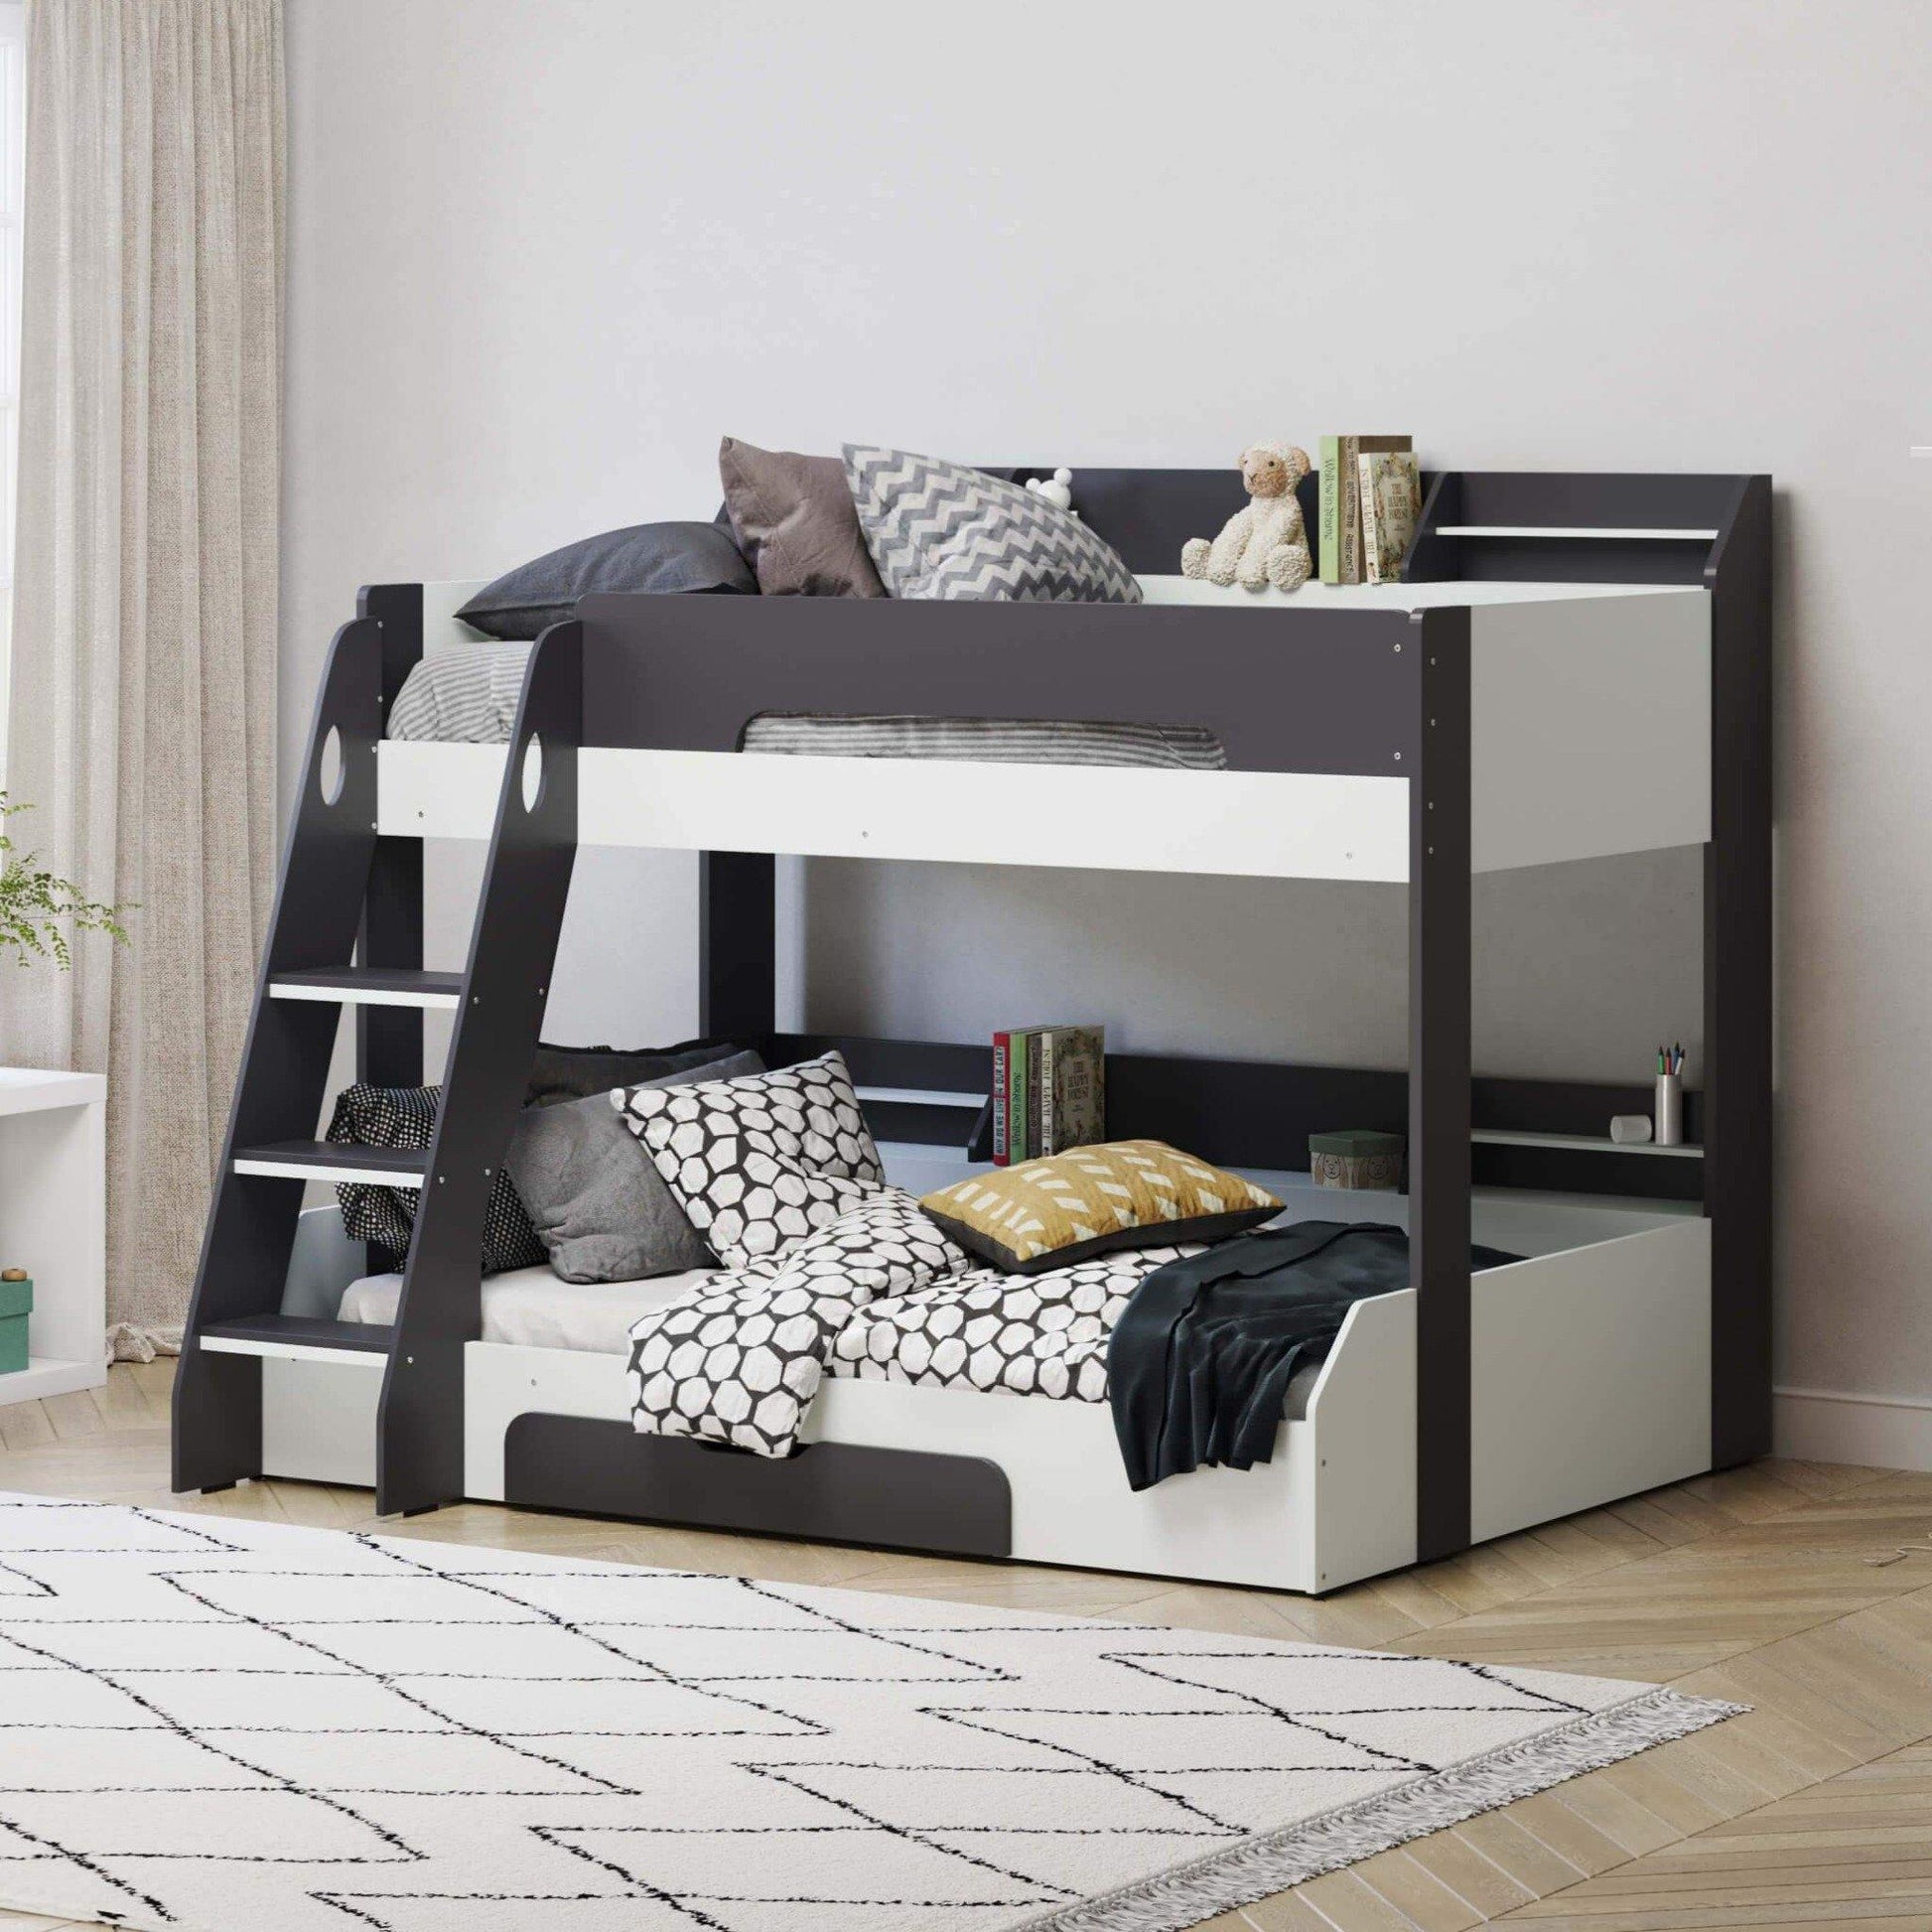 flick grey triple bunk bed childrens bedroom